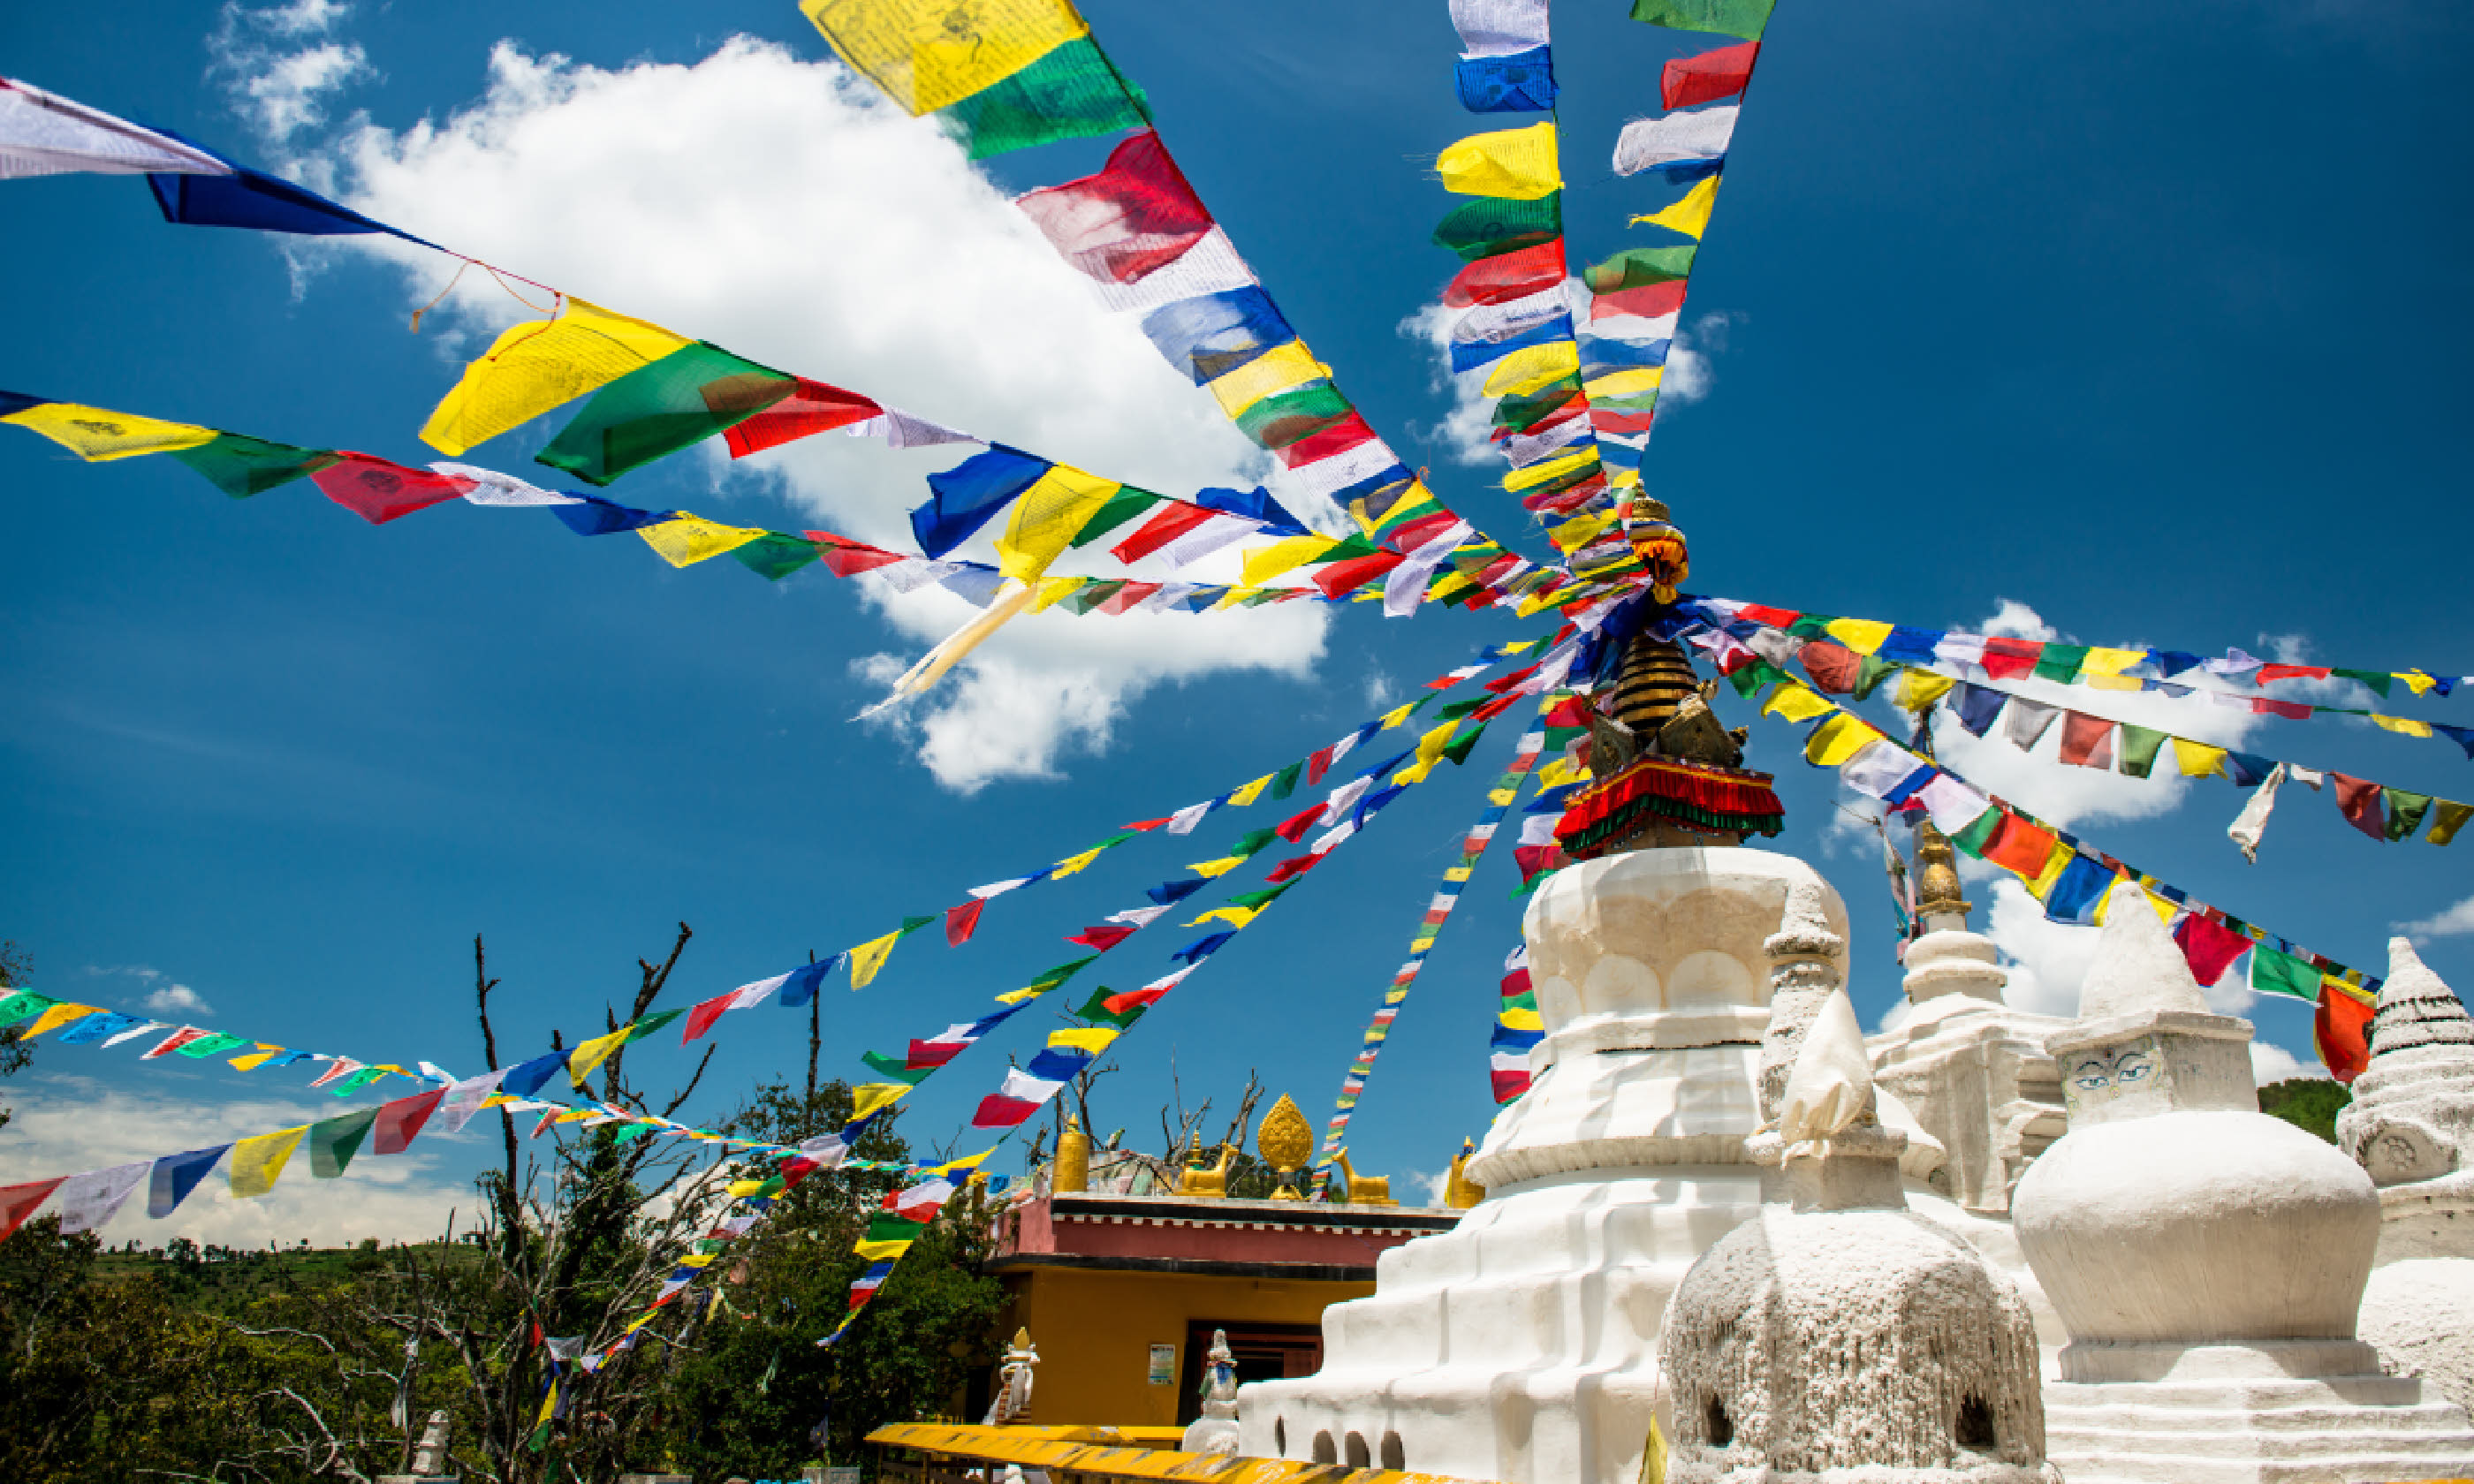 Buddhist monastery, Nepal (Shutterstock)